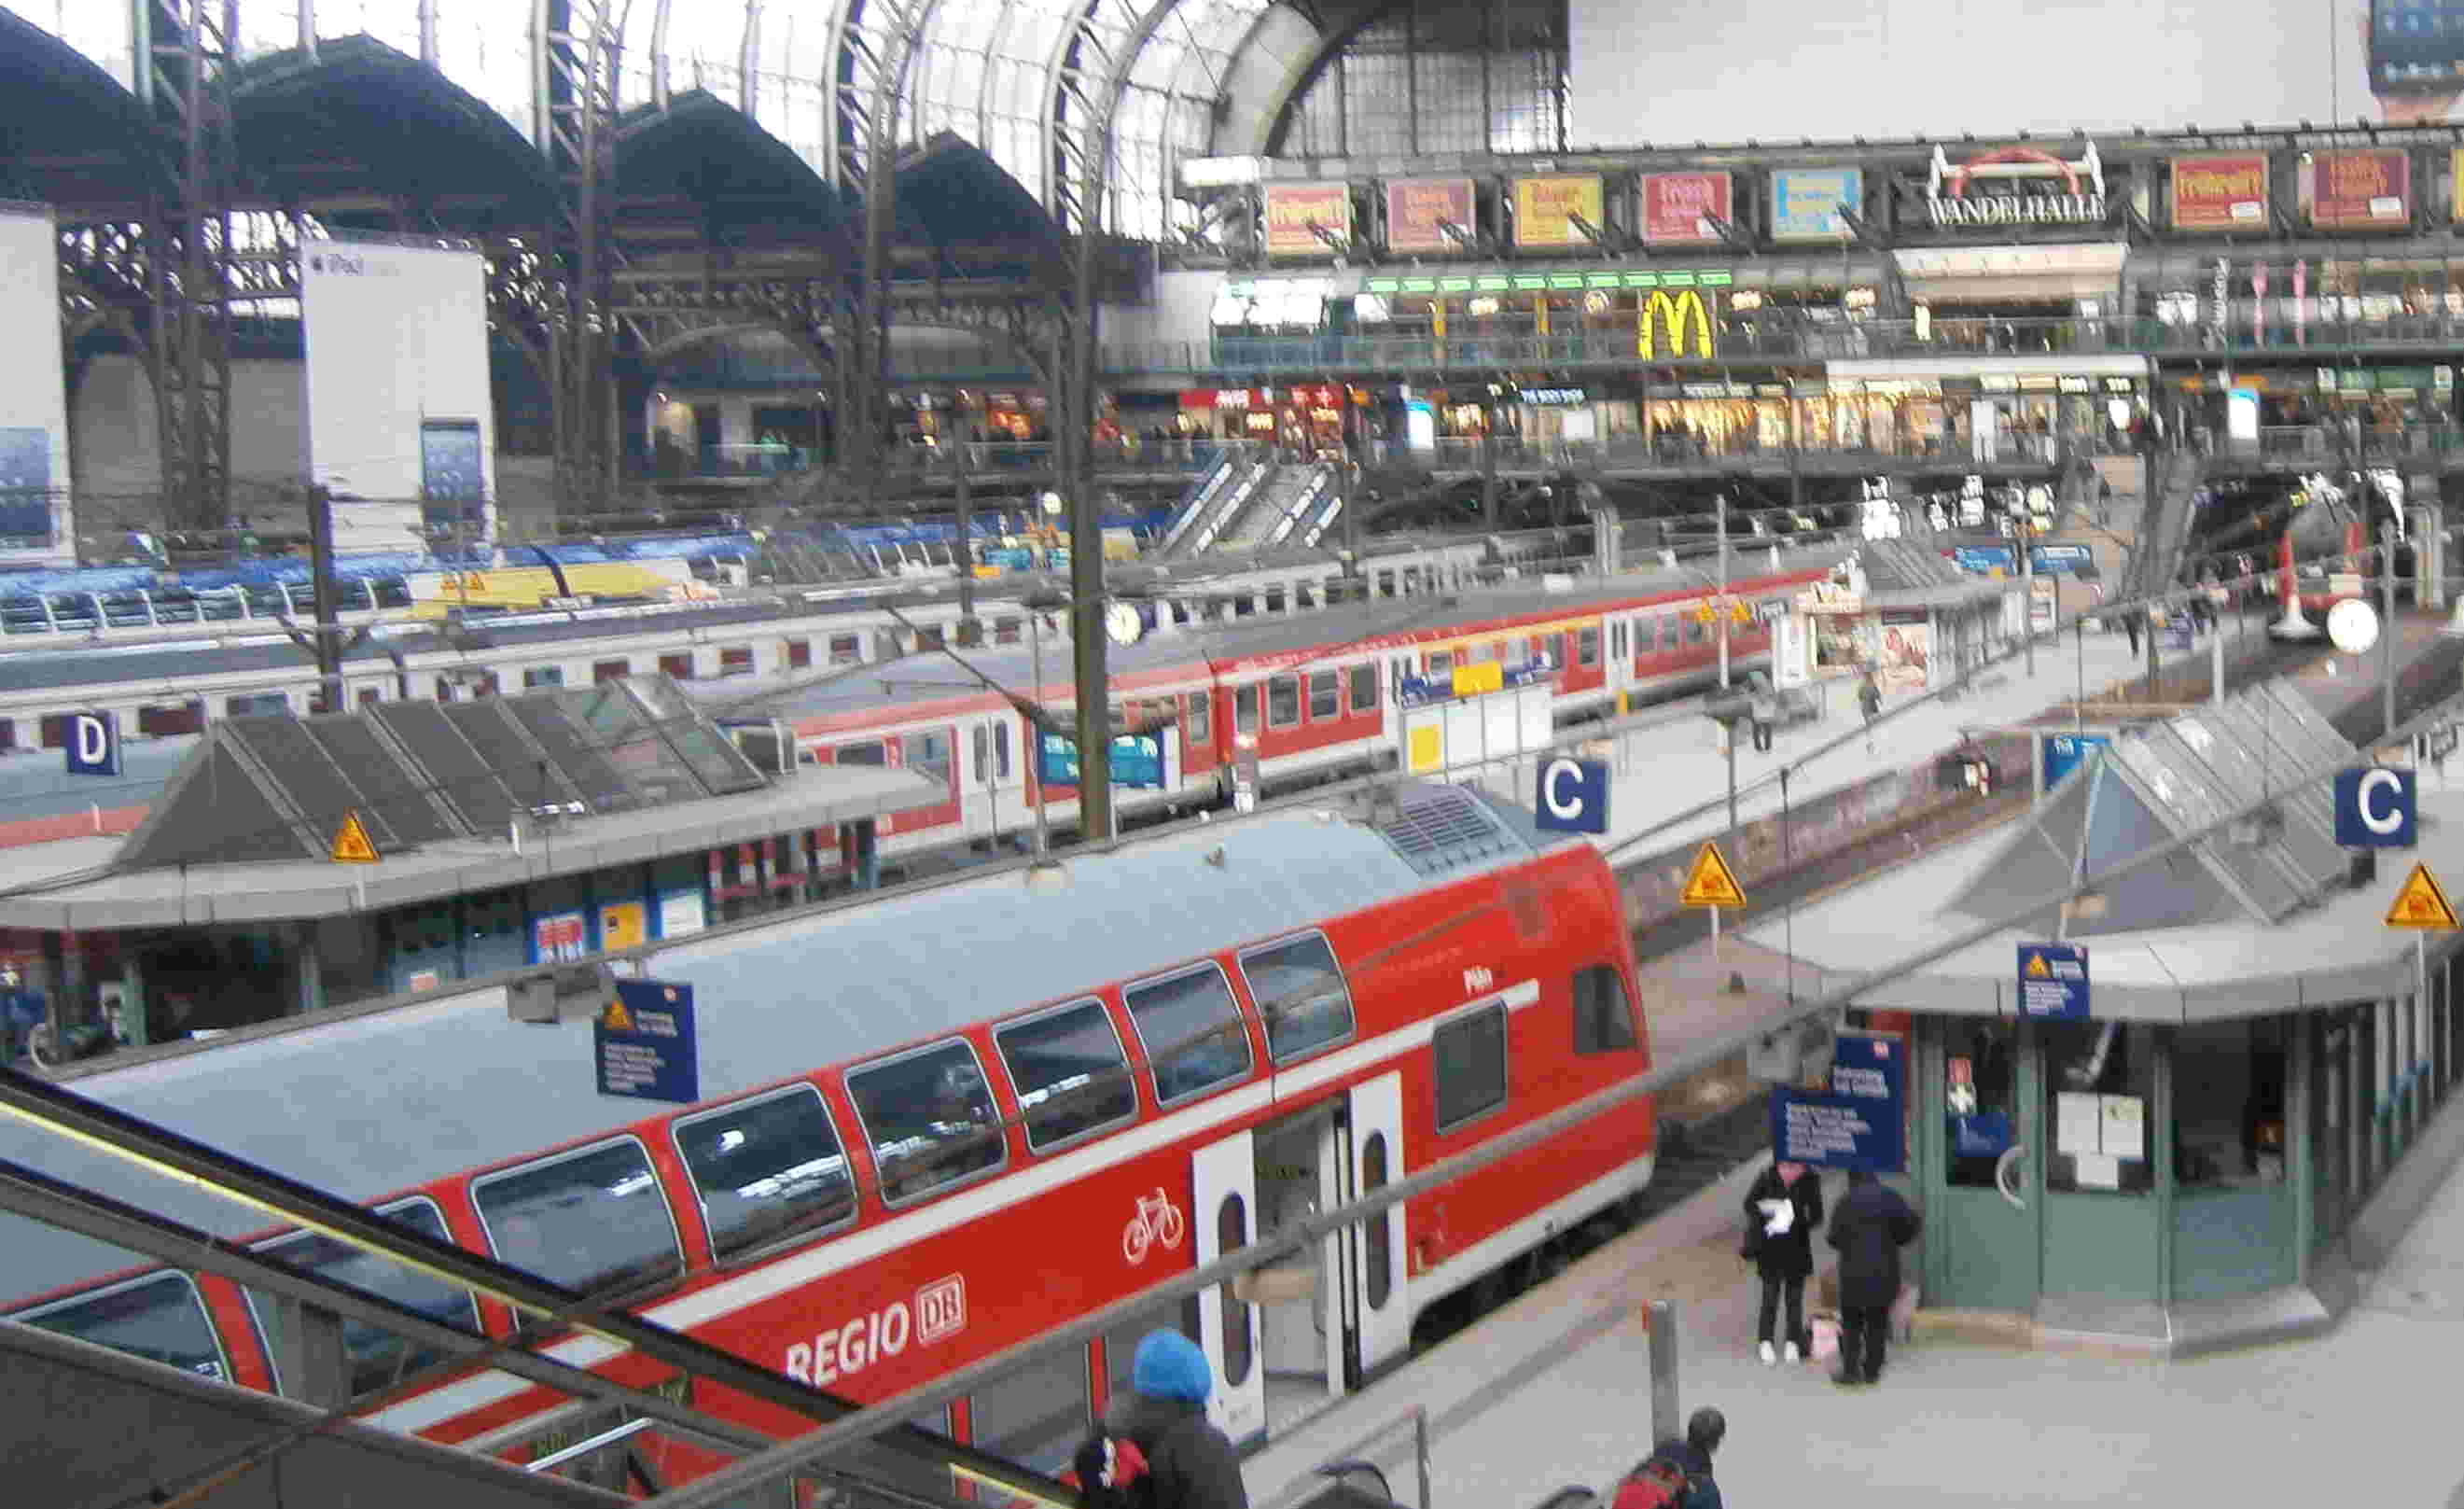 ถึงสถานีหัวลําโพง Hamburg แล้วครับน้า๚๚ แต่เราต้องนั้งไปอีก สถานีนึง Hamburg Altona  :

 :sick: :s